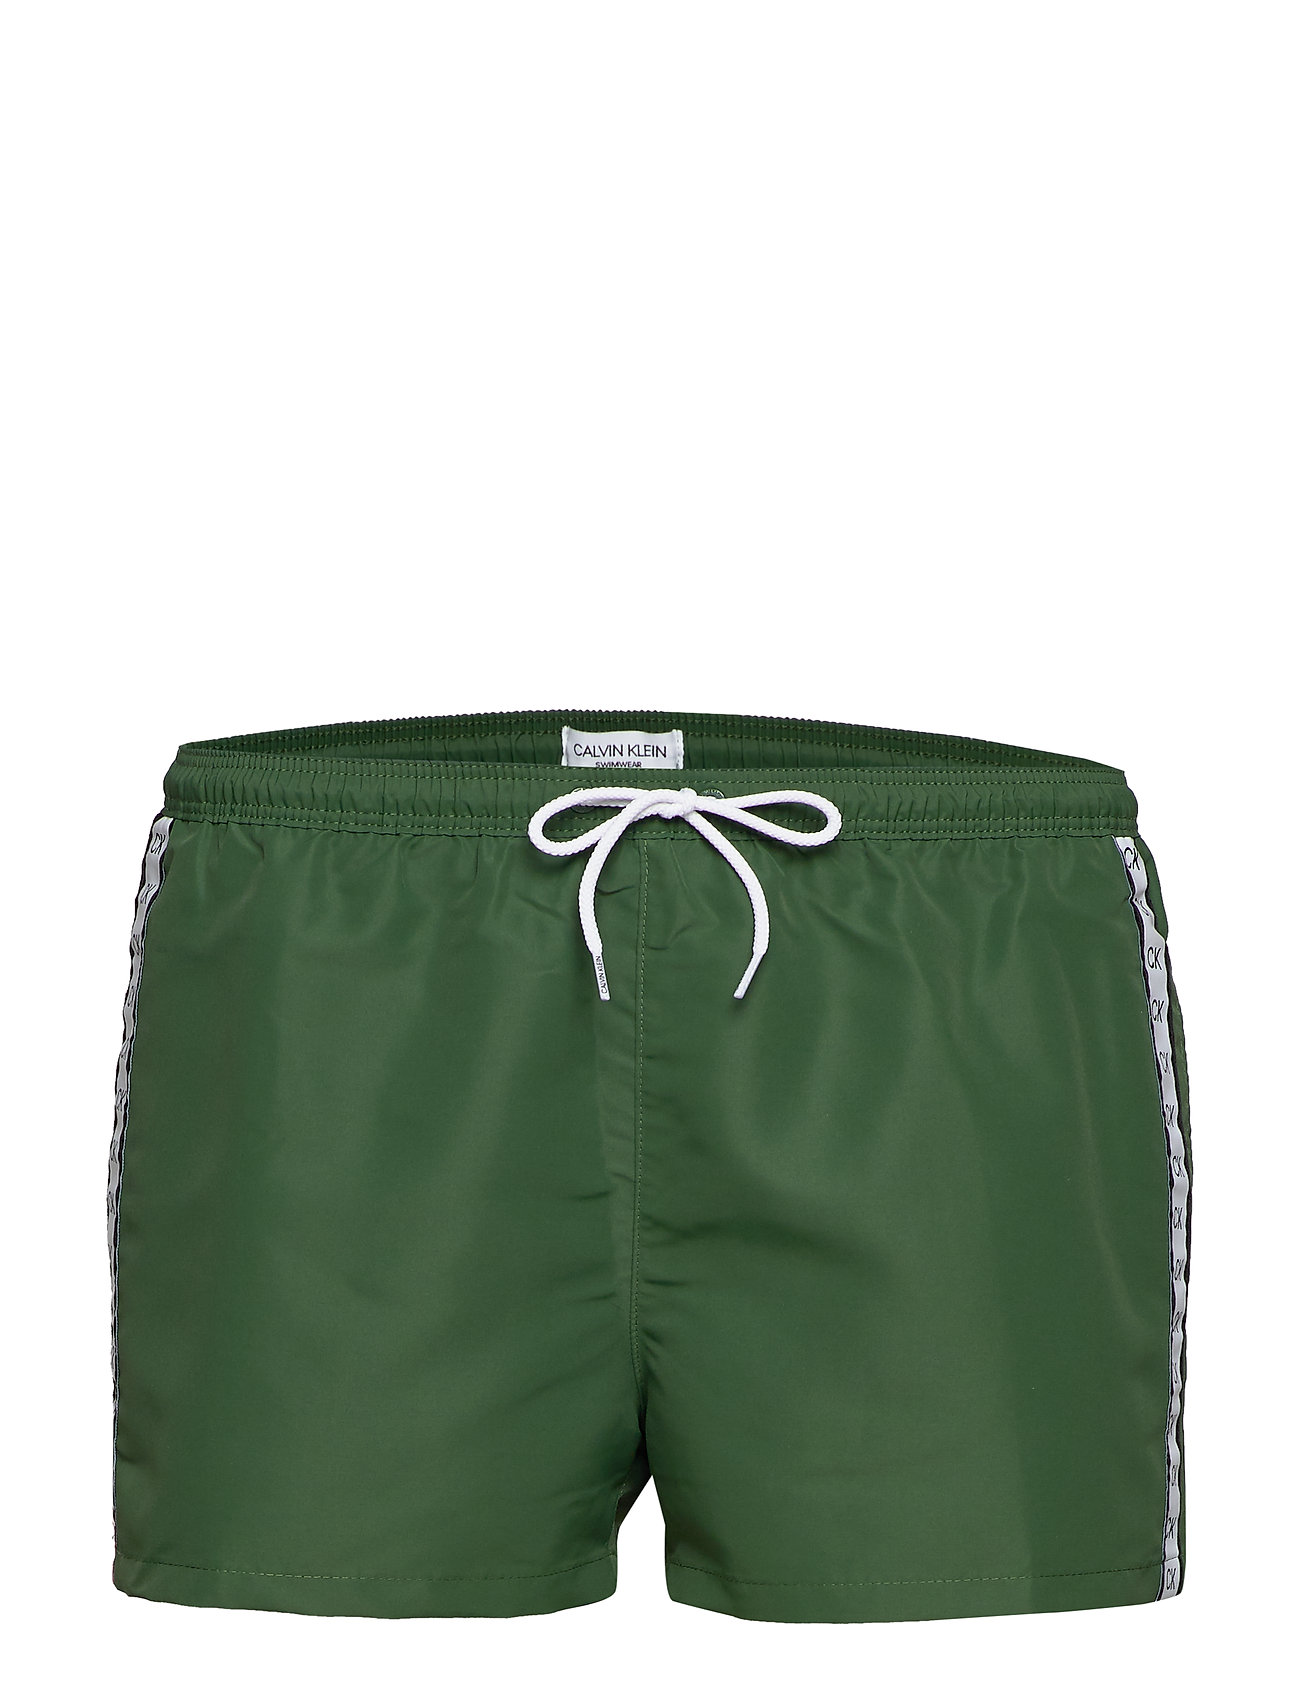 calvin klein green shorts